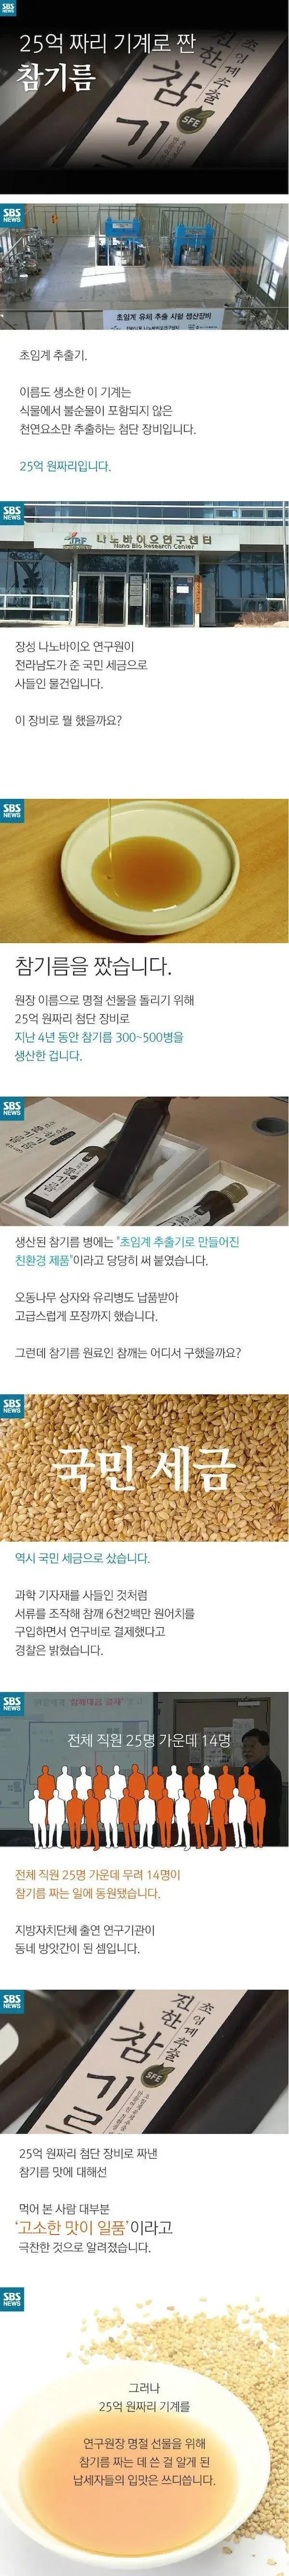 석박사들이 만든 참기름 레전드 ㄷ..JPG | mbong.kr 엠봉